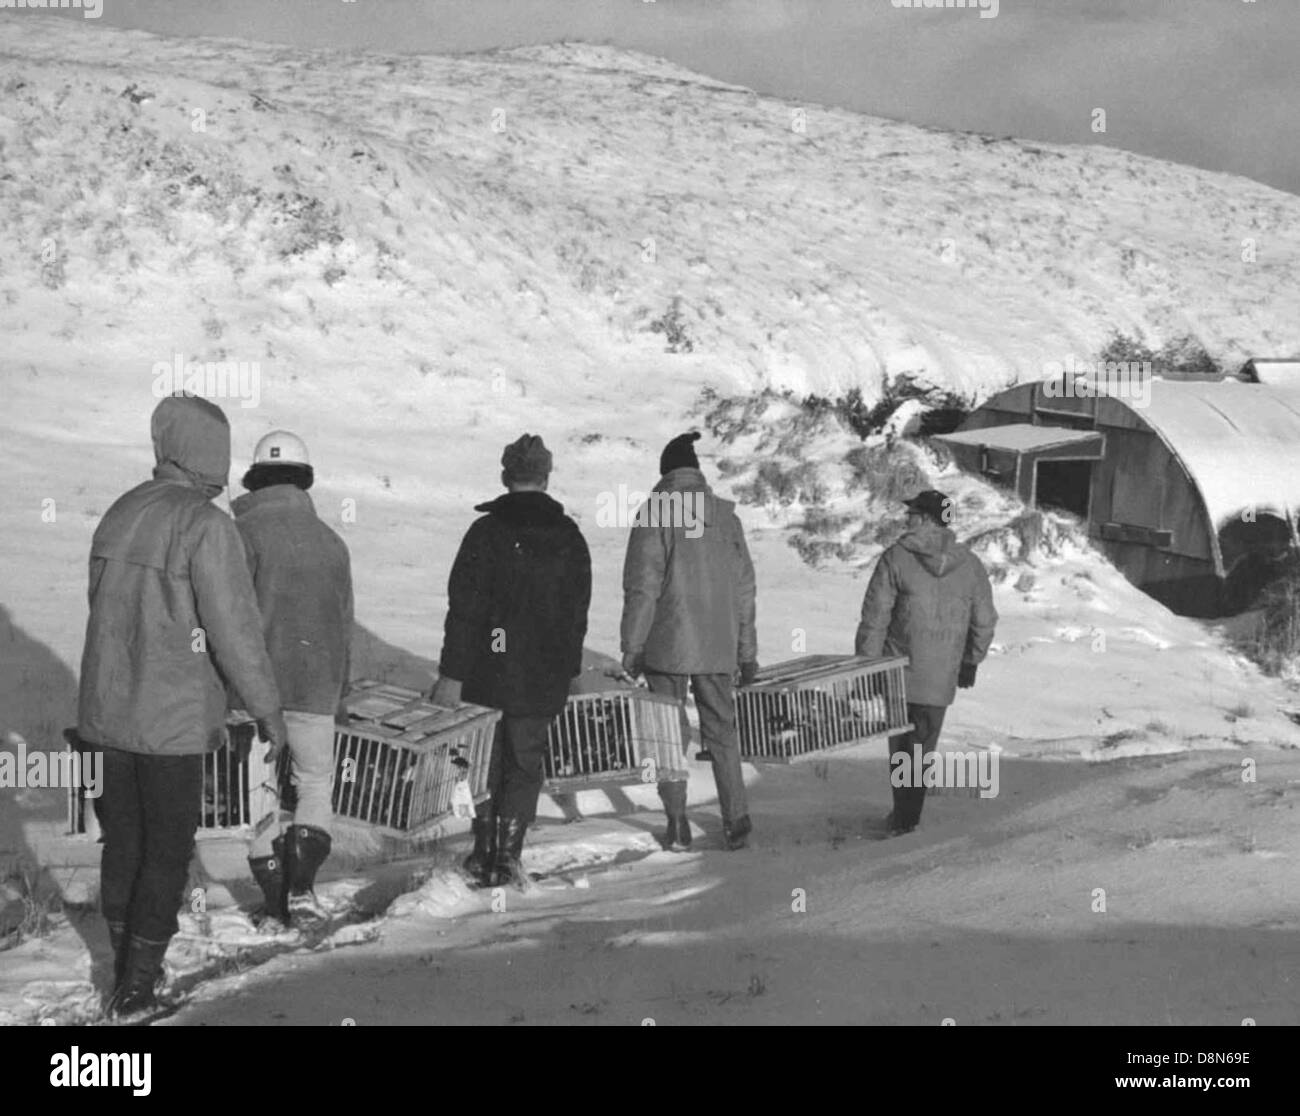 Amchitka island goose release. Stock Photo